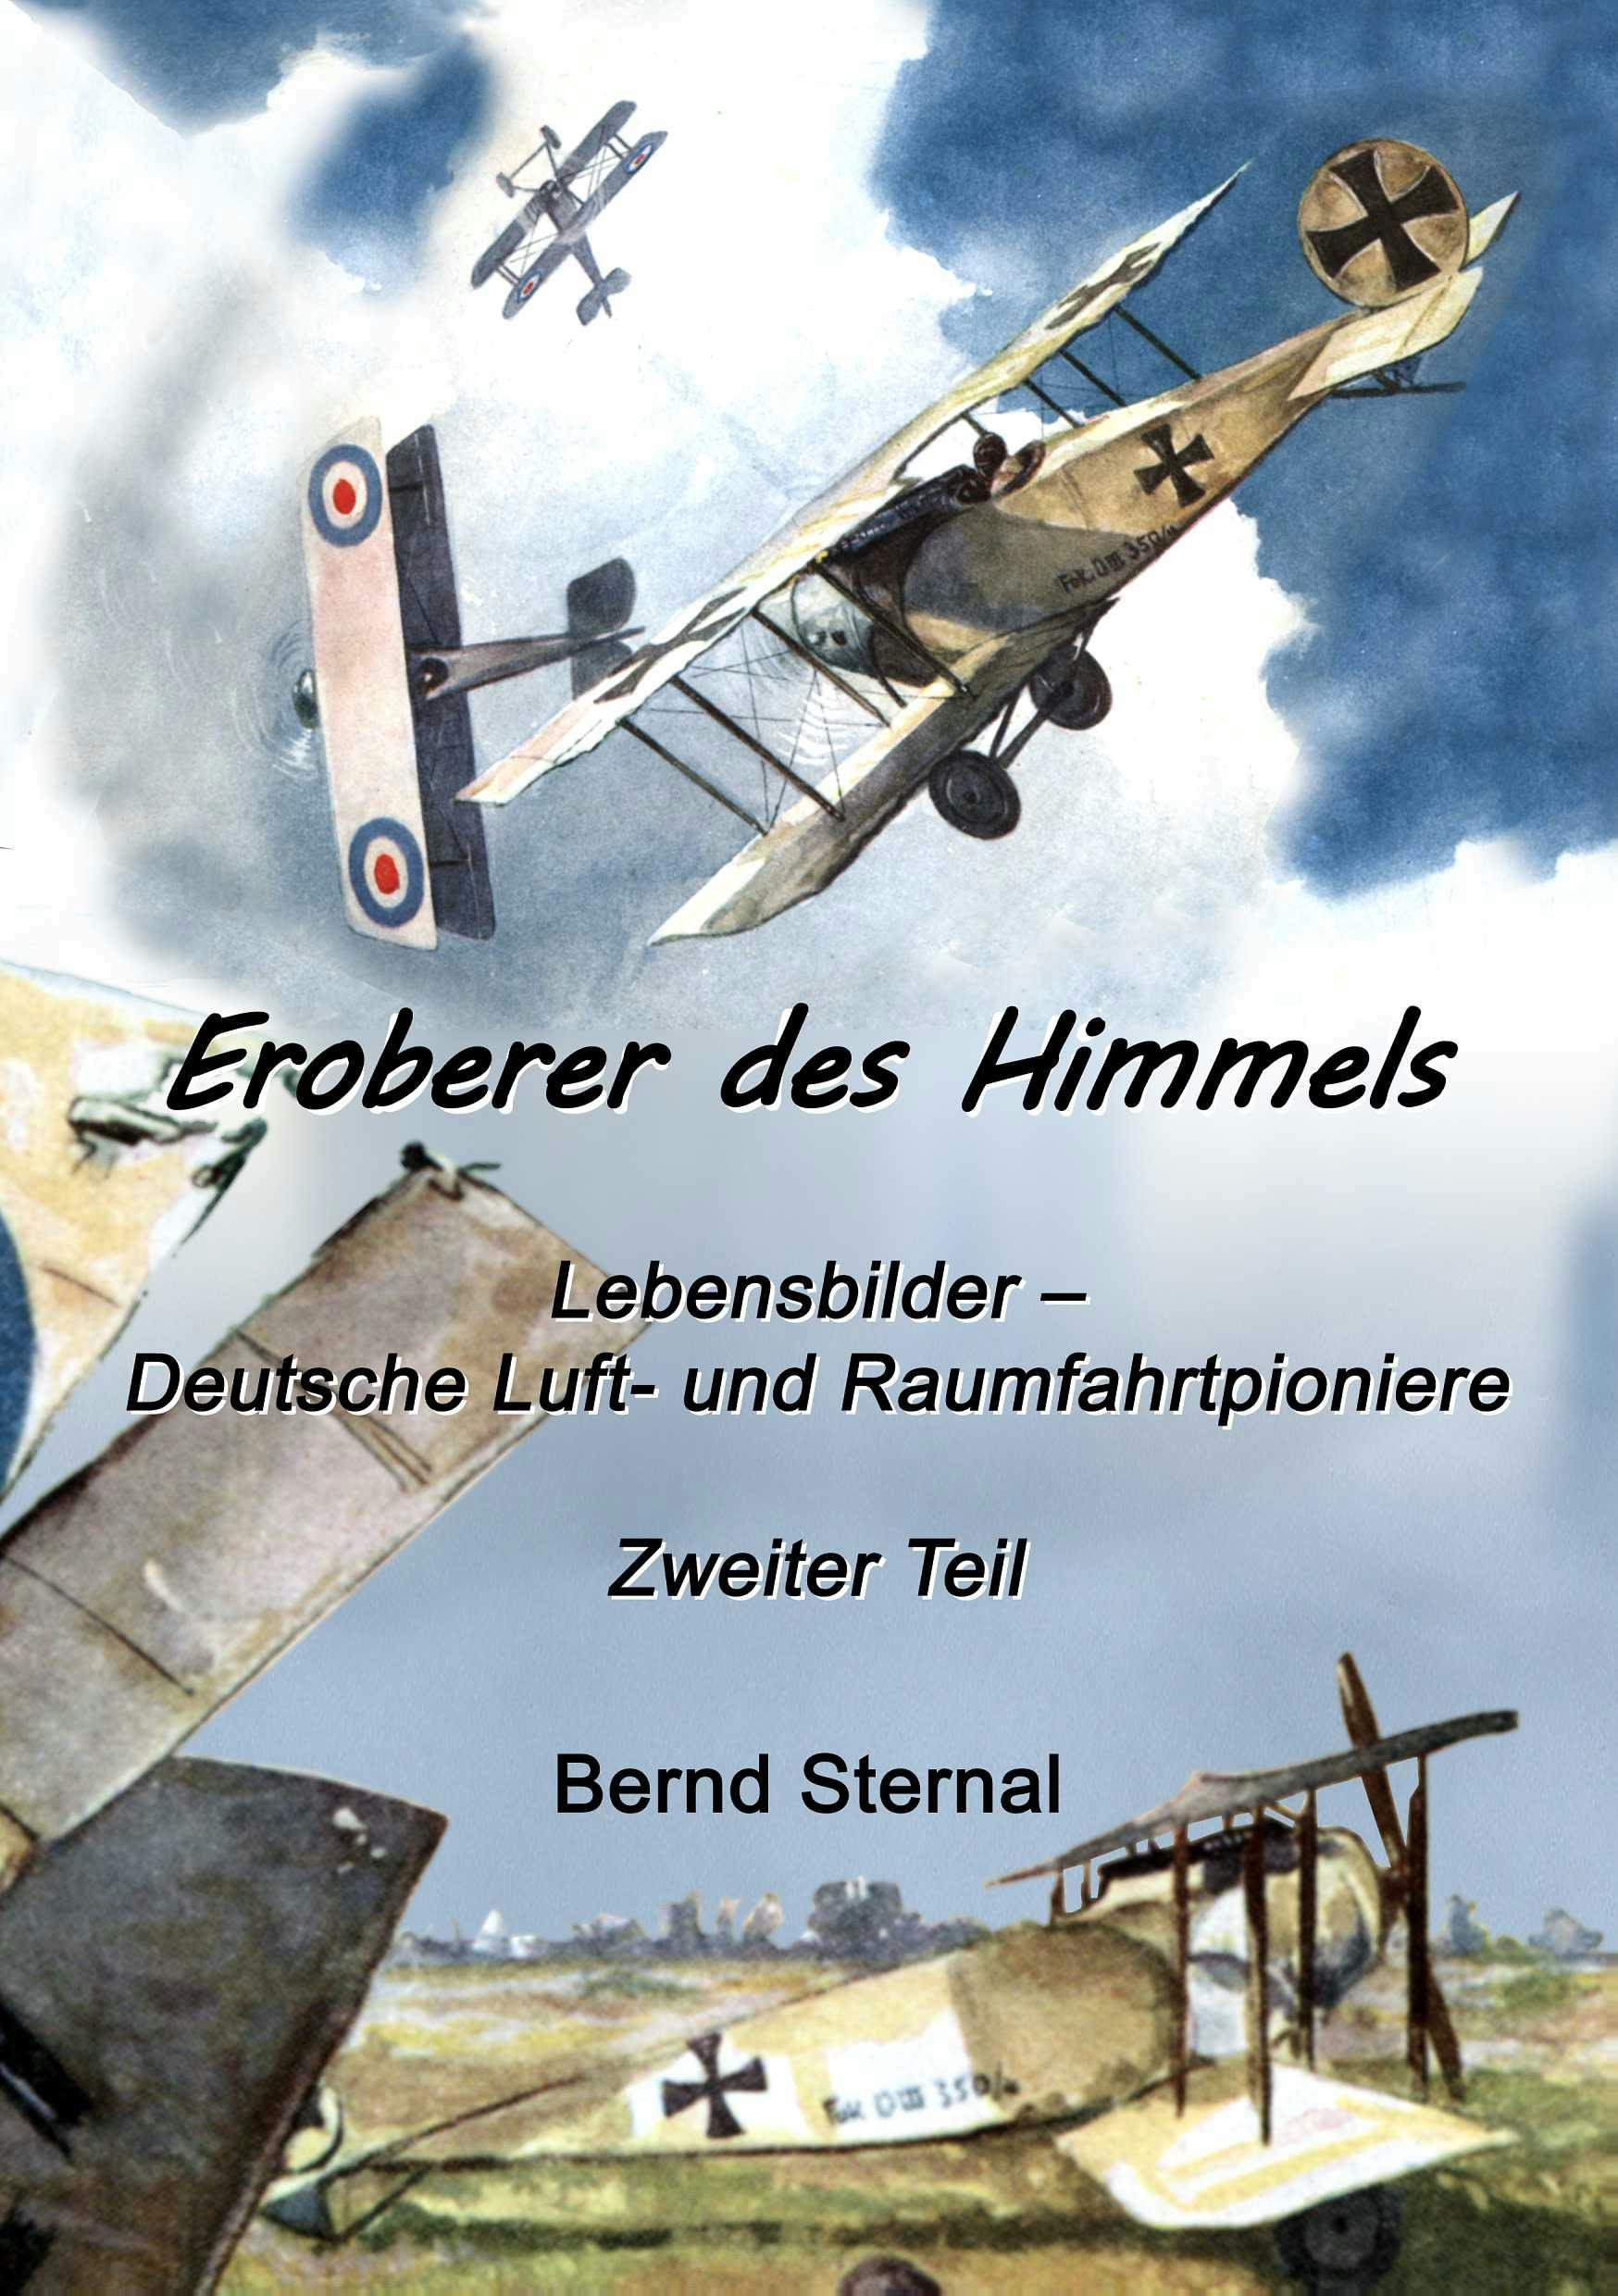 Eroberer des Himmels  (Teil 2) - Bernd Sternal